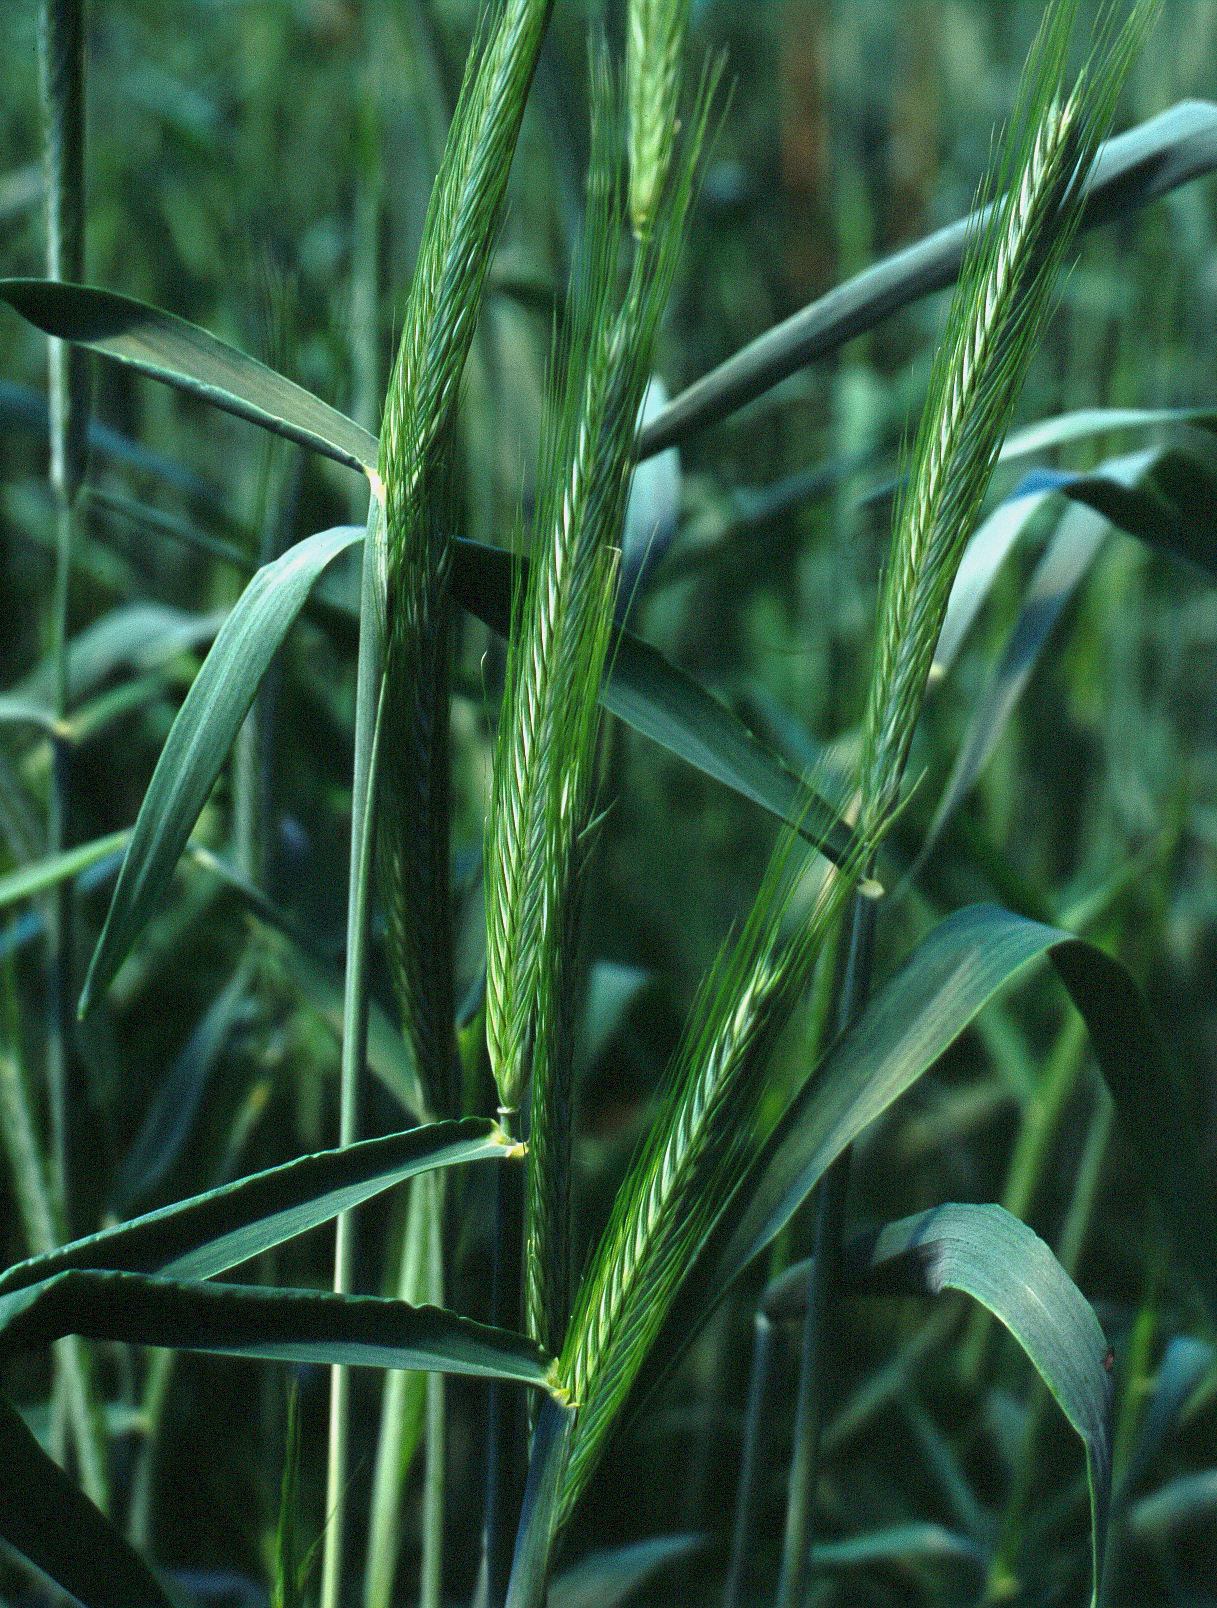 KWS-wheat-ARANTES-Image-4.jpg